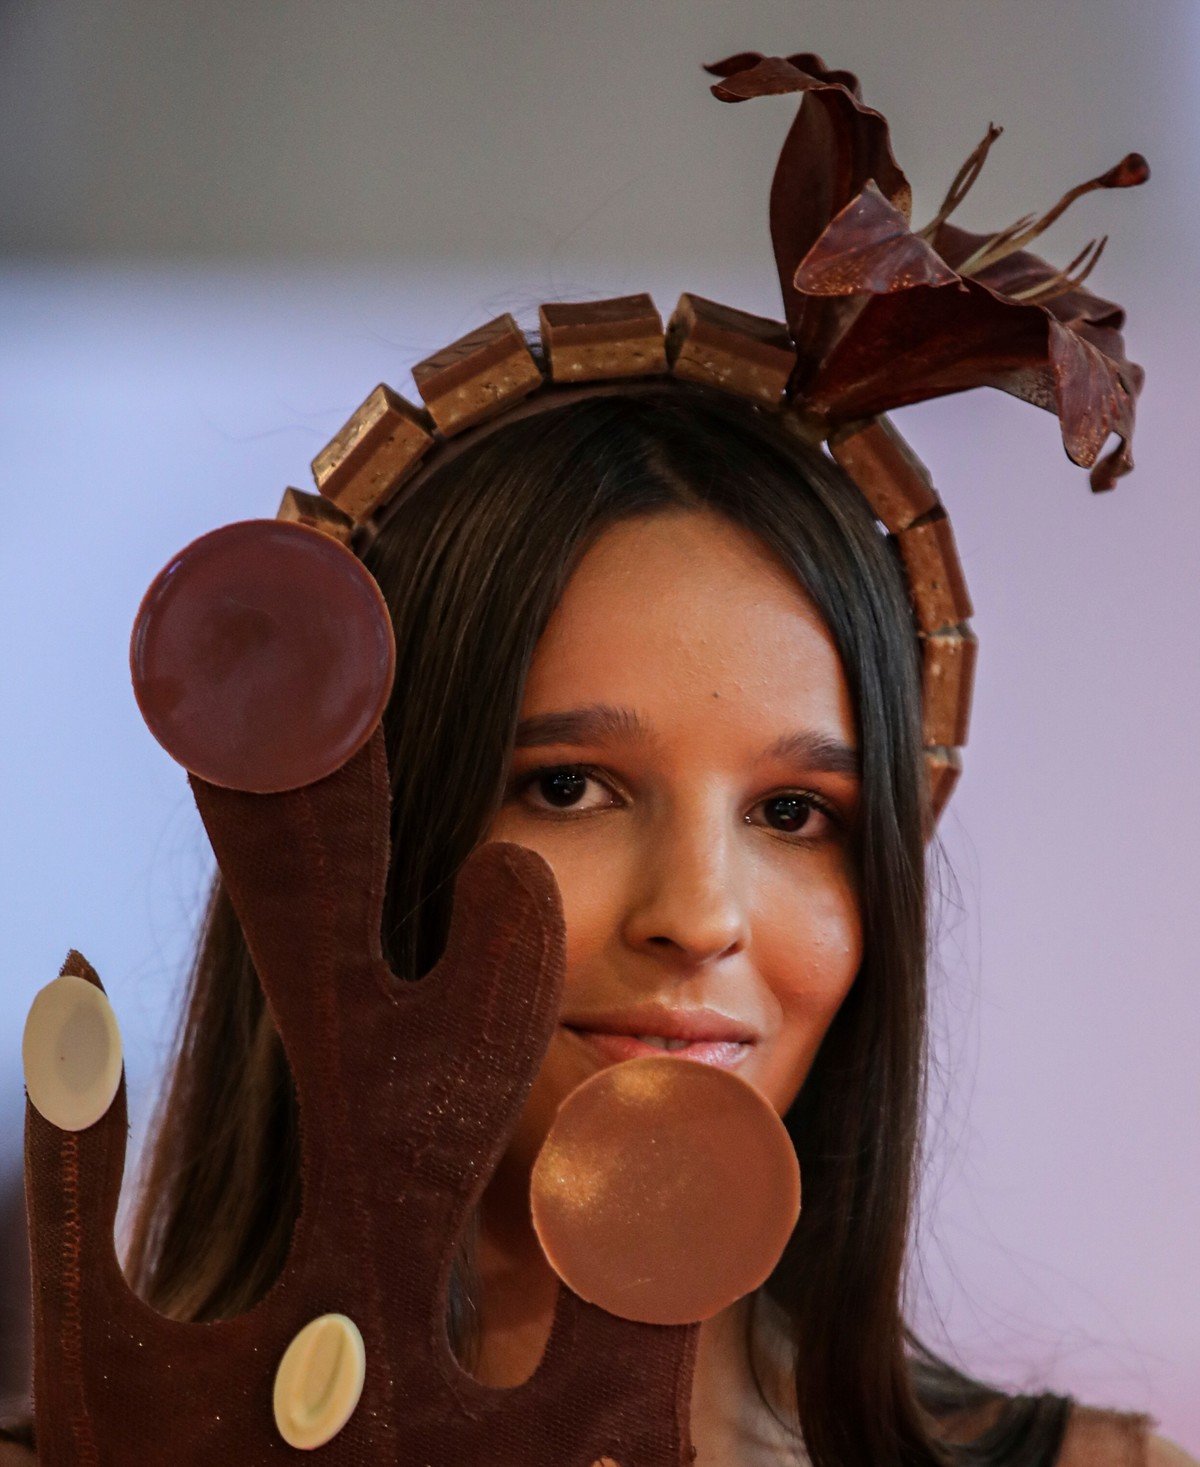 Показ платьев из шоколада на выставке Salon du Chocolat в Дубае